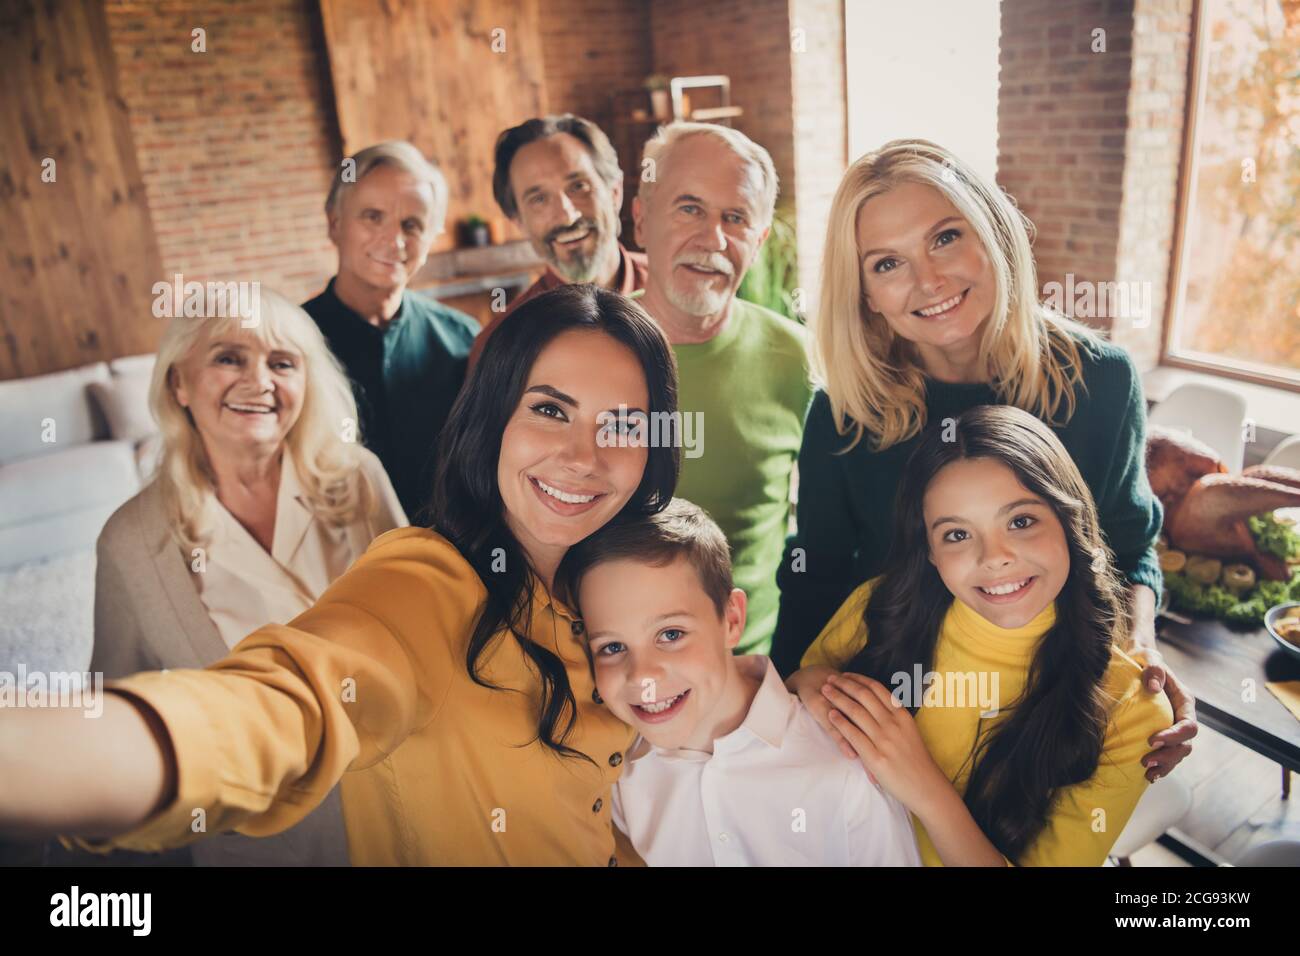 Nahaufnahme Portrait Foto von einer großen Familie, die acht Personen versammelt Machen Selfie Kuscheln Umarmung warten Beten Gott sei Dank Gutes haben Herbstzeit machen Wunsch Stockfoto